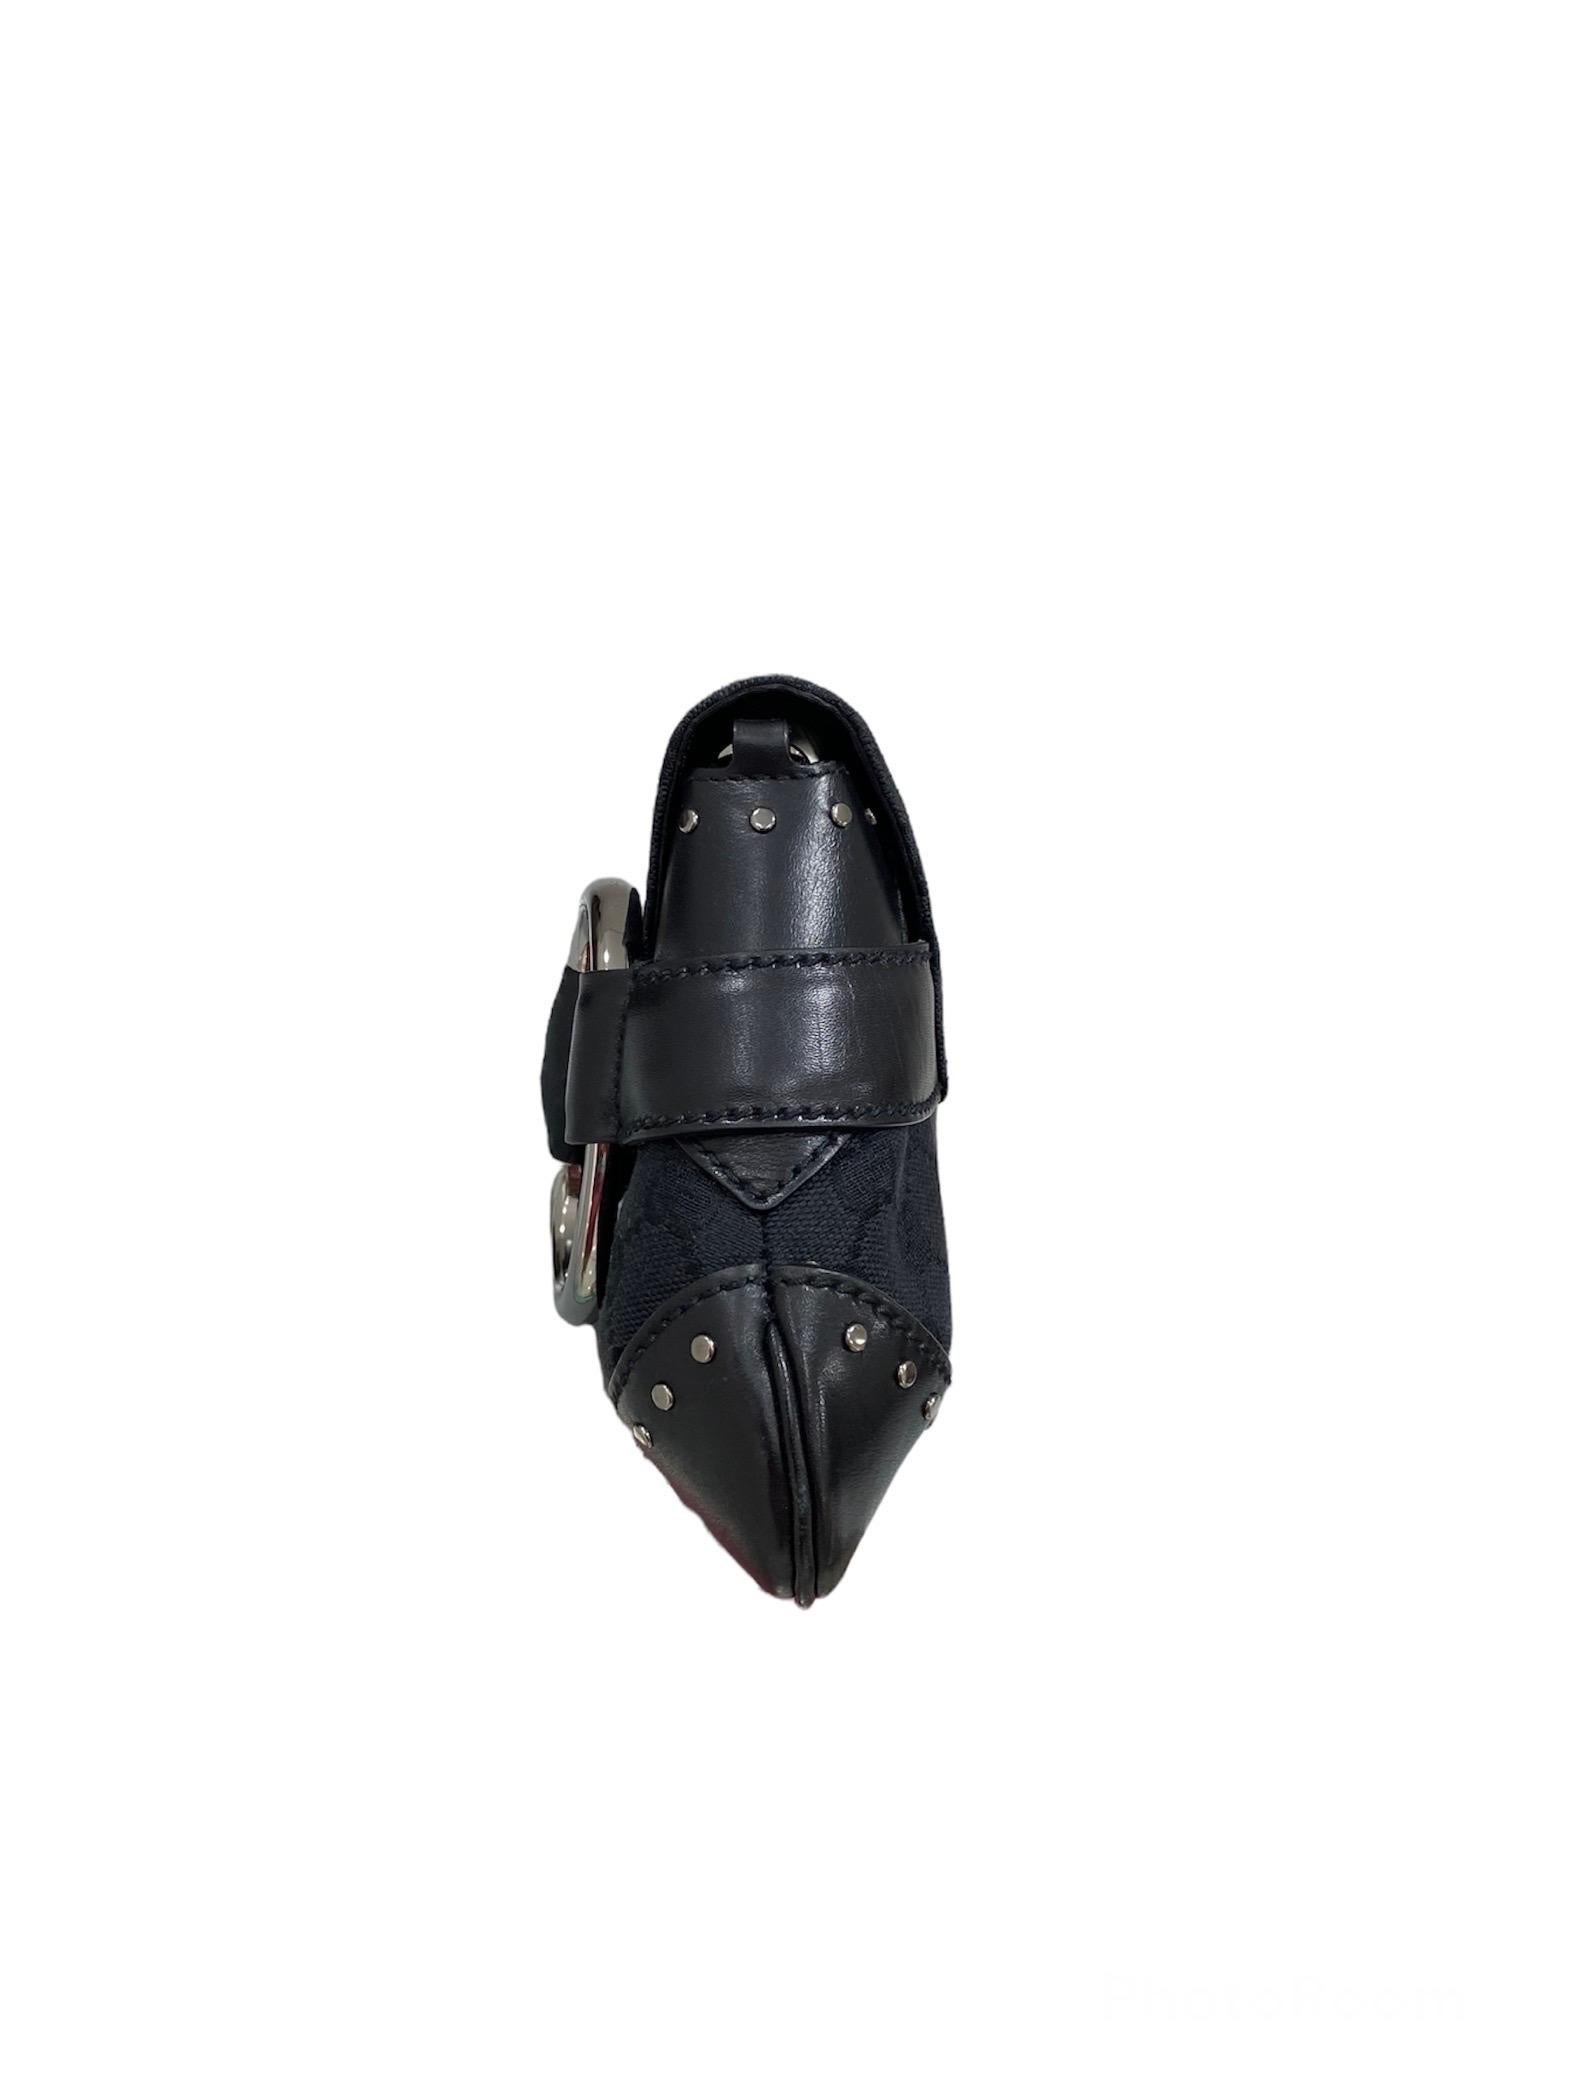 Gucci Tom Ford Black Shoulder Bag 1